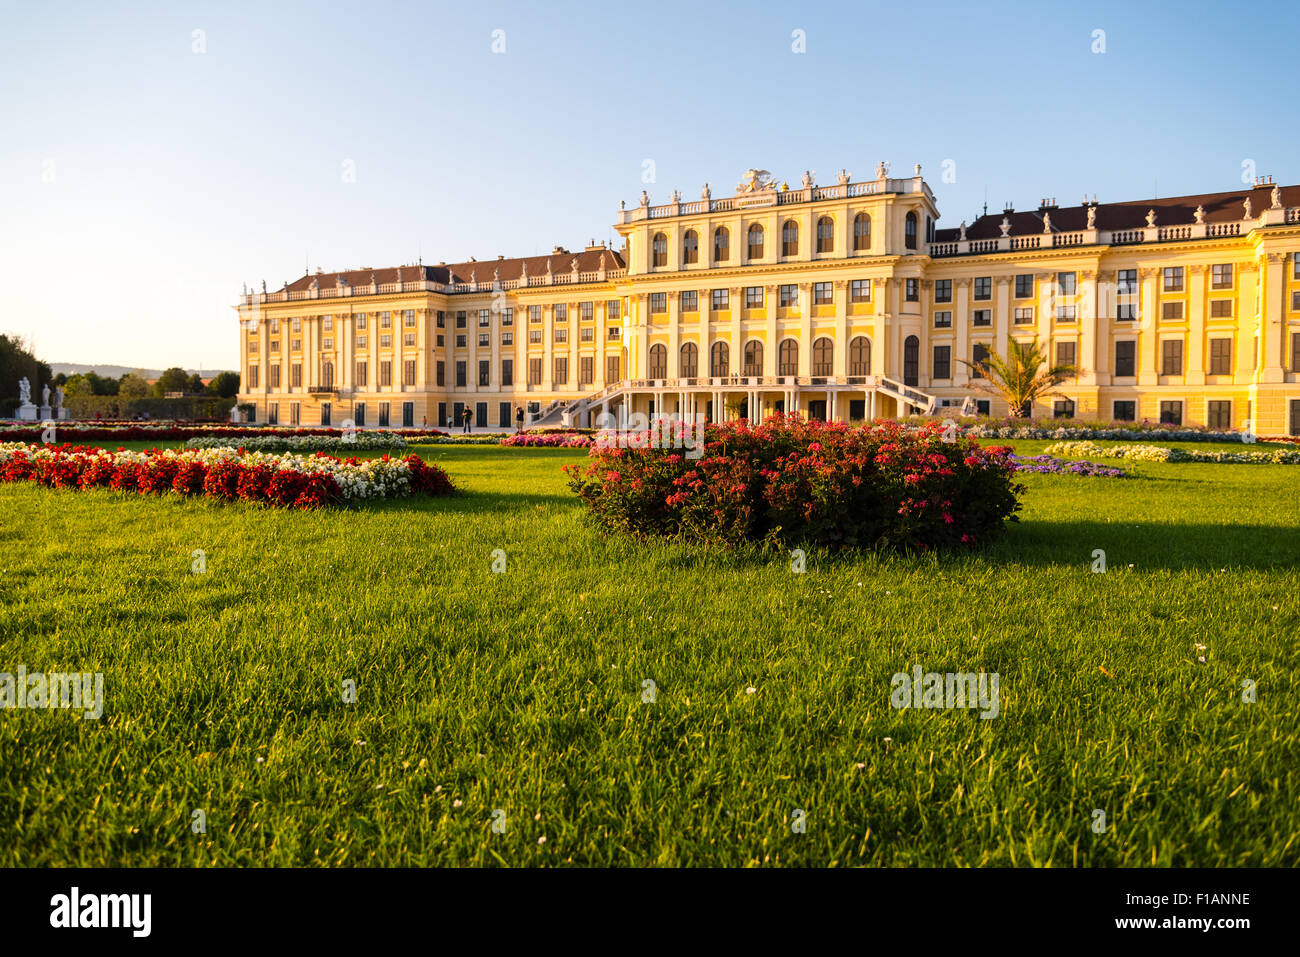 El castillo Schönbrunn, Viena, Austria, en una noche de verano Foto de stock